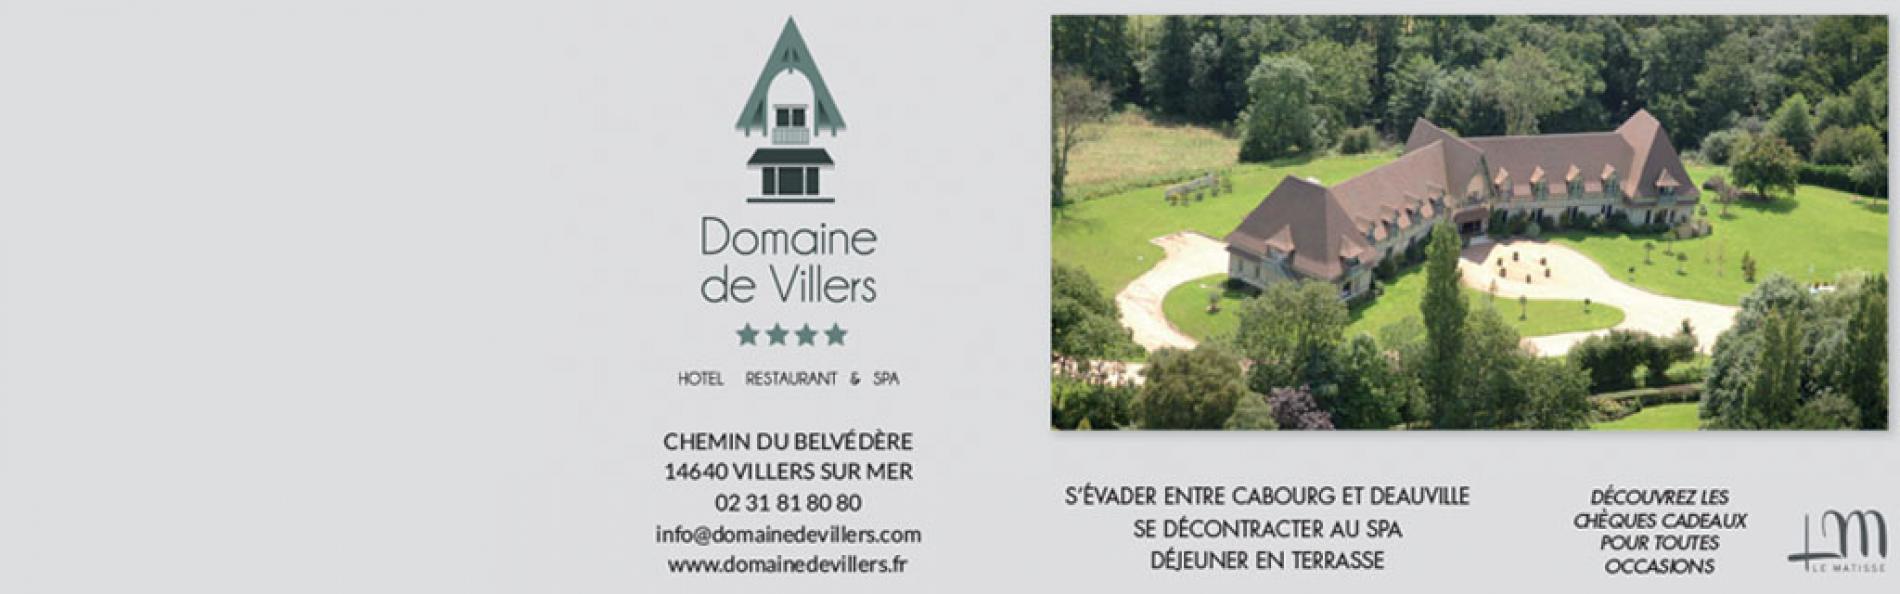 Hotel Deauville Le Domaine de Villers vous propose des sÃ©jours dÃ©tente au spa, des sÃ©jours romantique, d'affaires / sÃ©minaire, ou encore gastronomique au sein du restaurant de l'hotel.